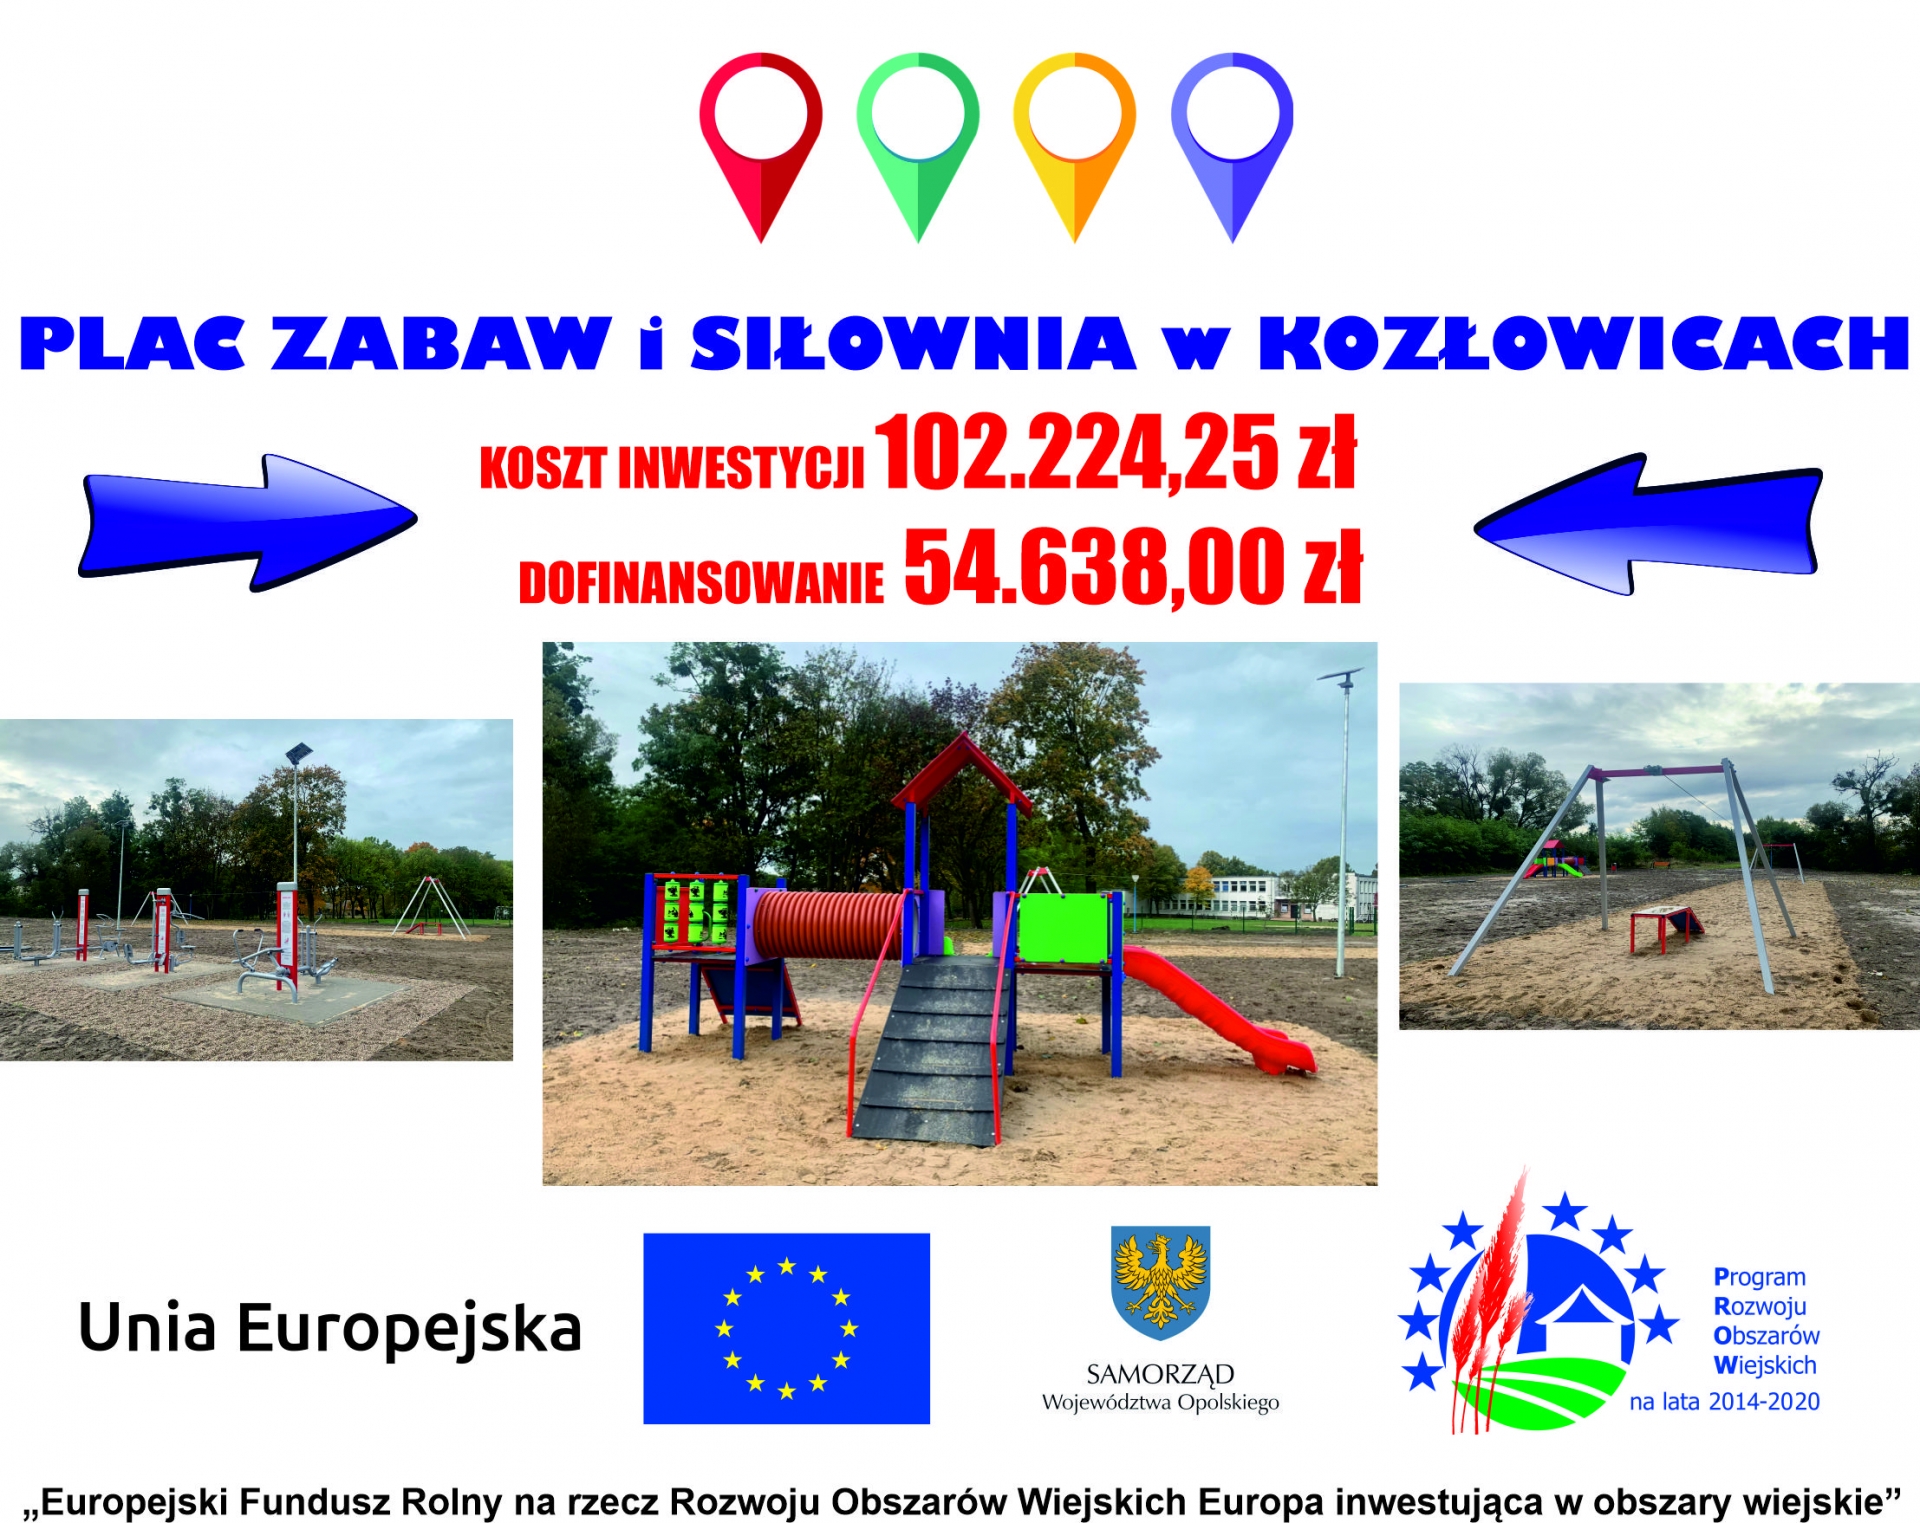 Zdjęcie do artykułu: Plac zabaw i siłownia w Kozłowicach 